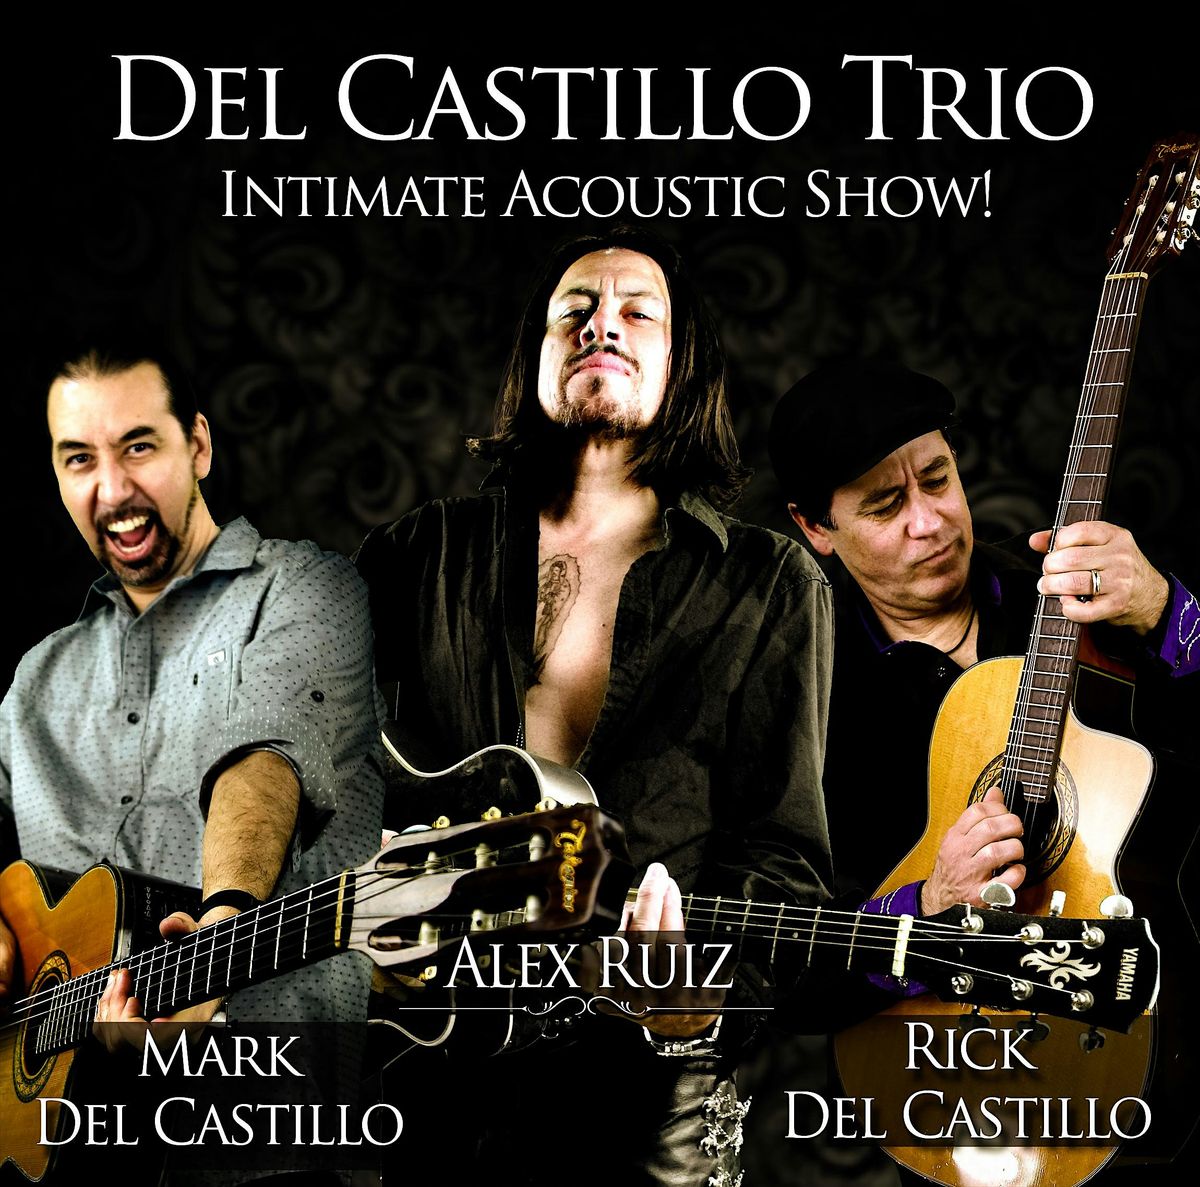 Del Castillo Trio